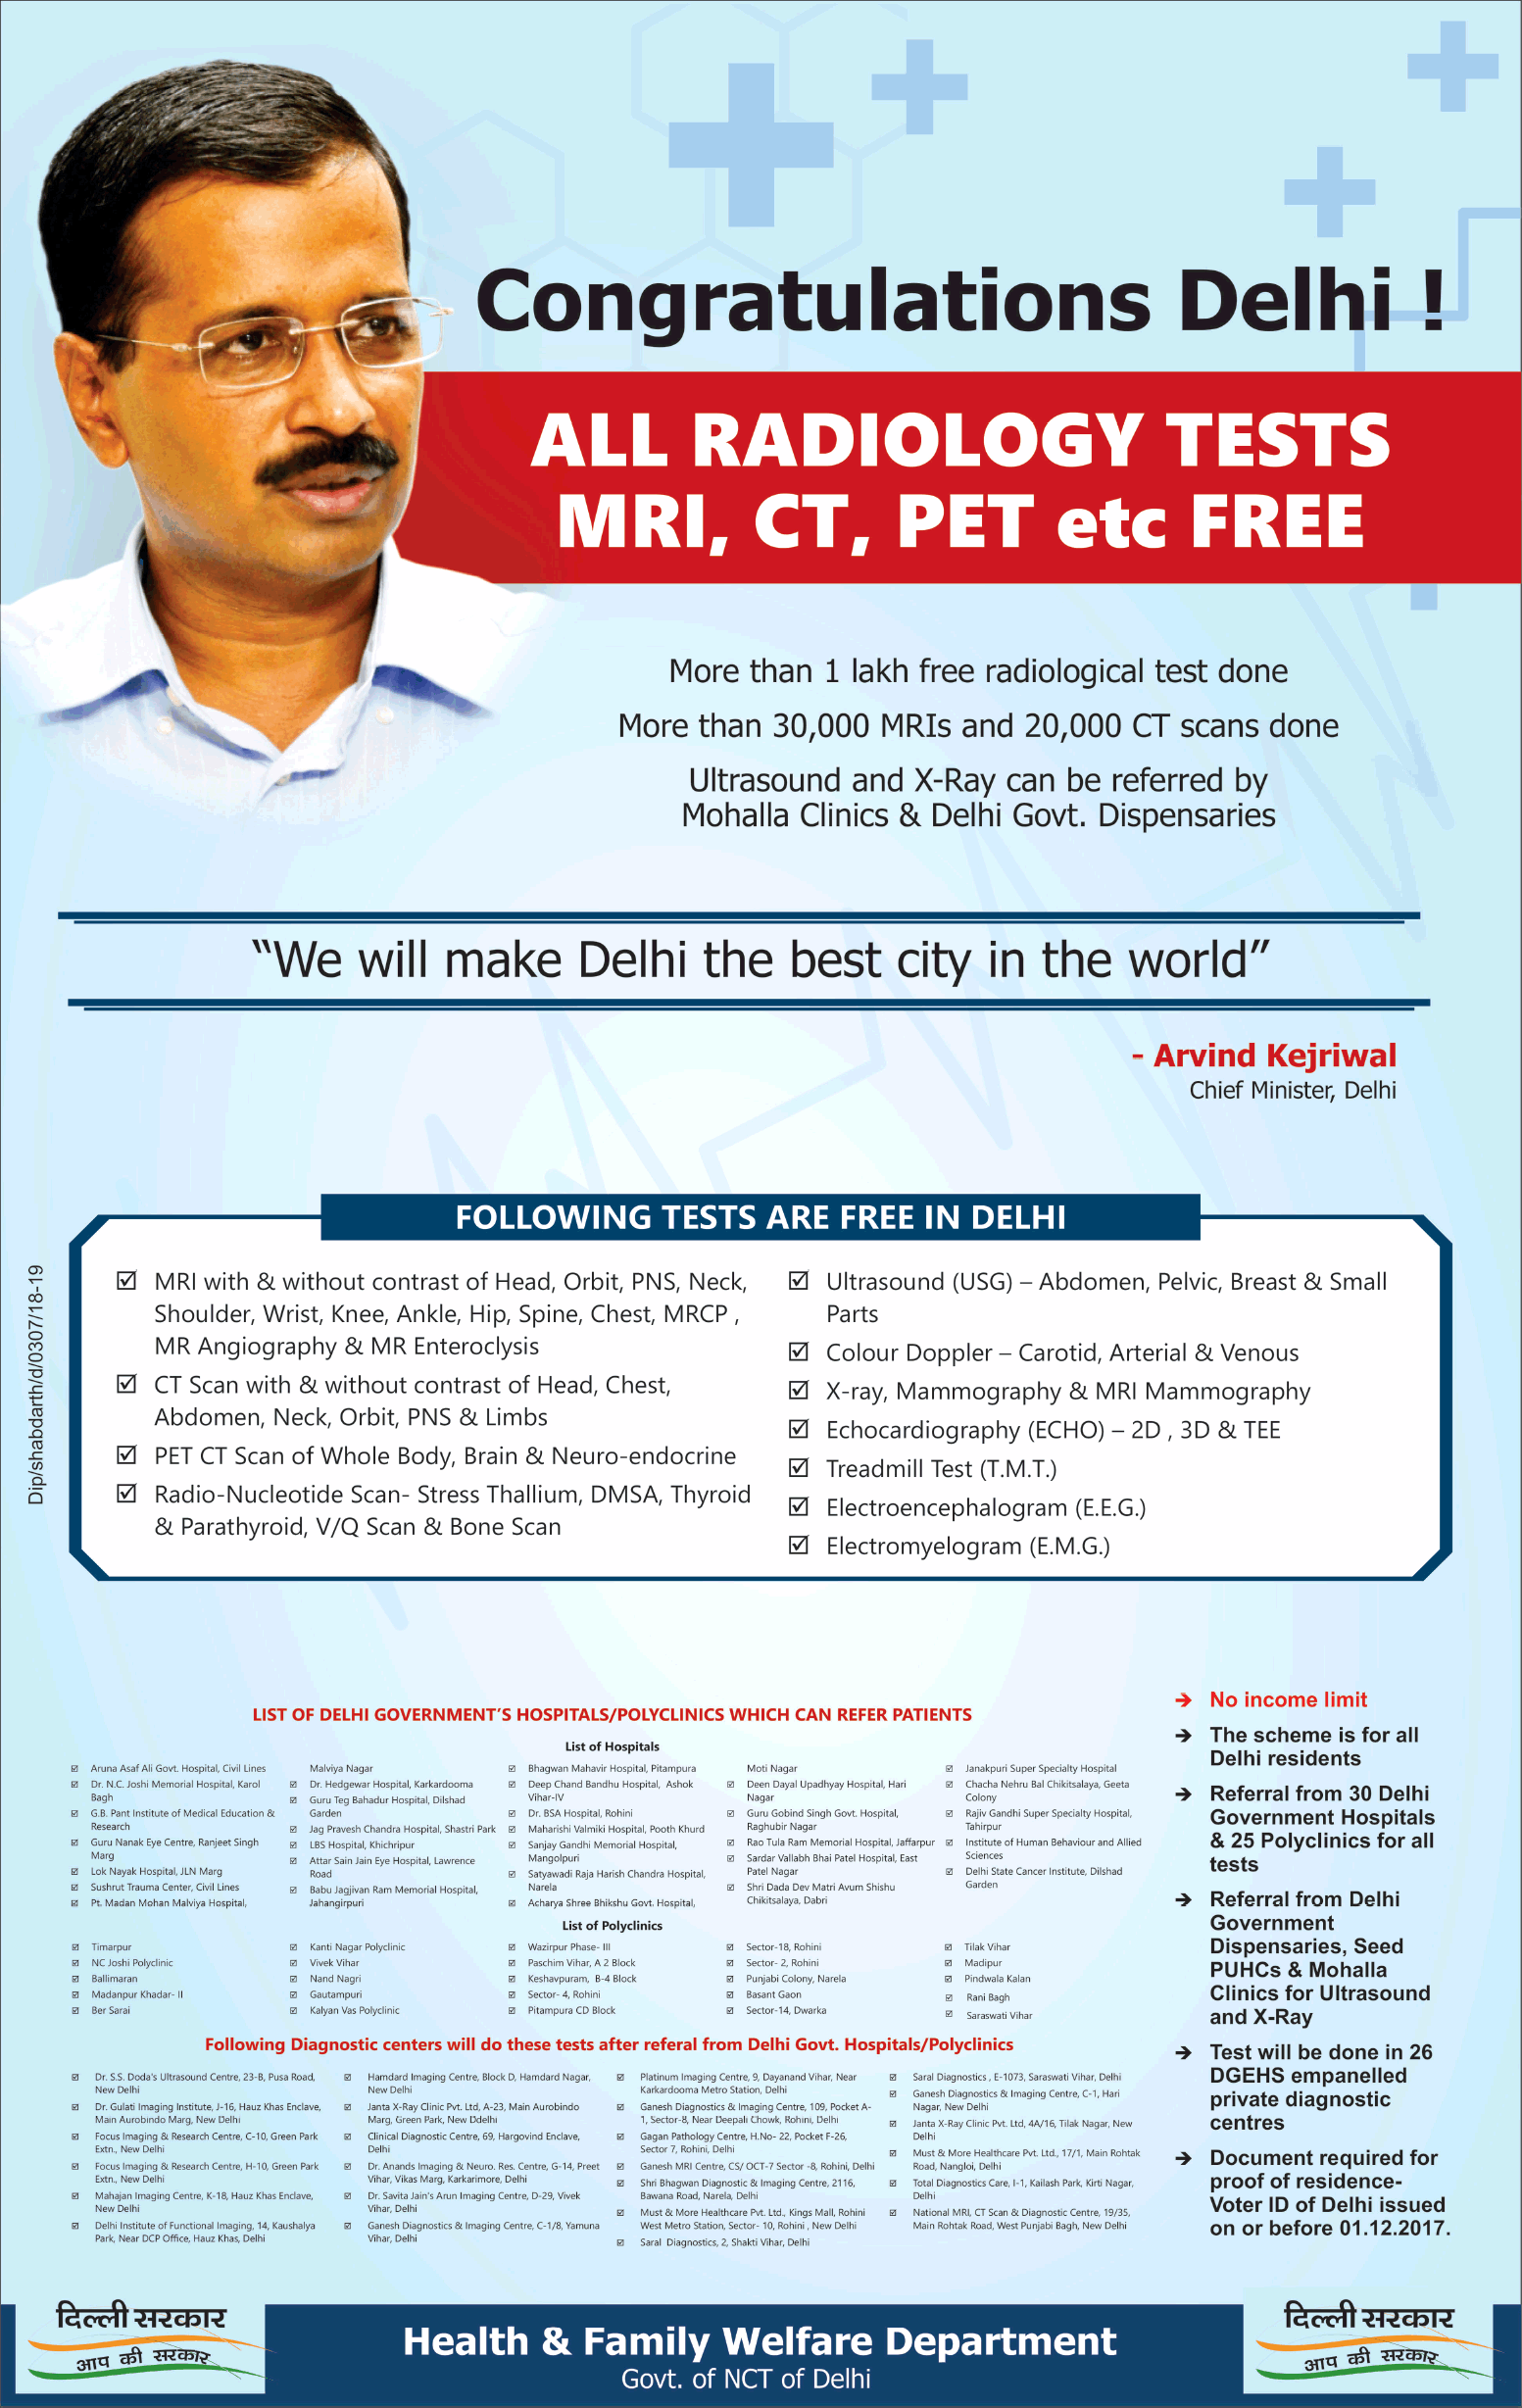 delhi-sarkar-congratulations-delhi-all-radiology-tests-mri-ct-pet-etc-free-ad-times-of-india-delhi-07-03-2019.png